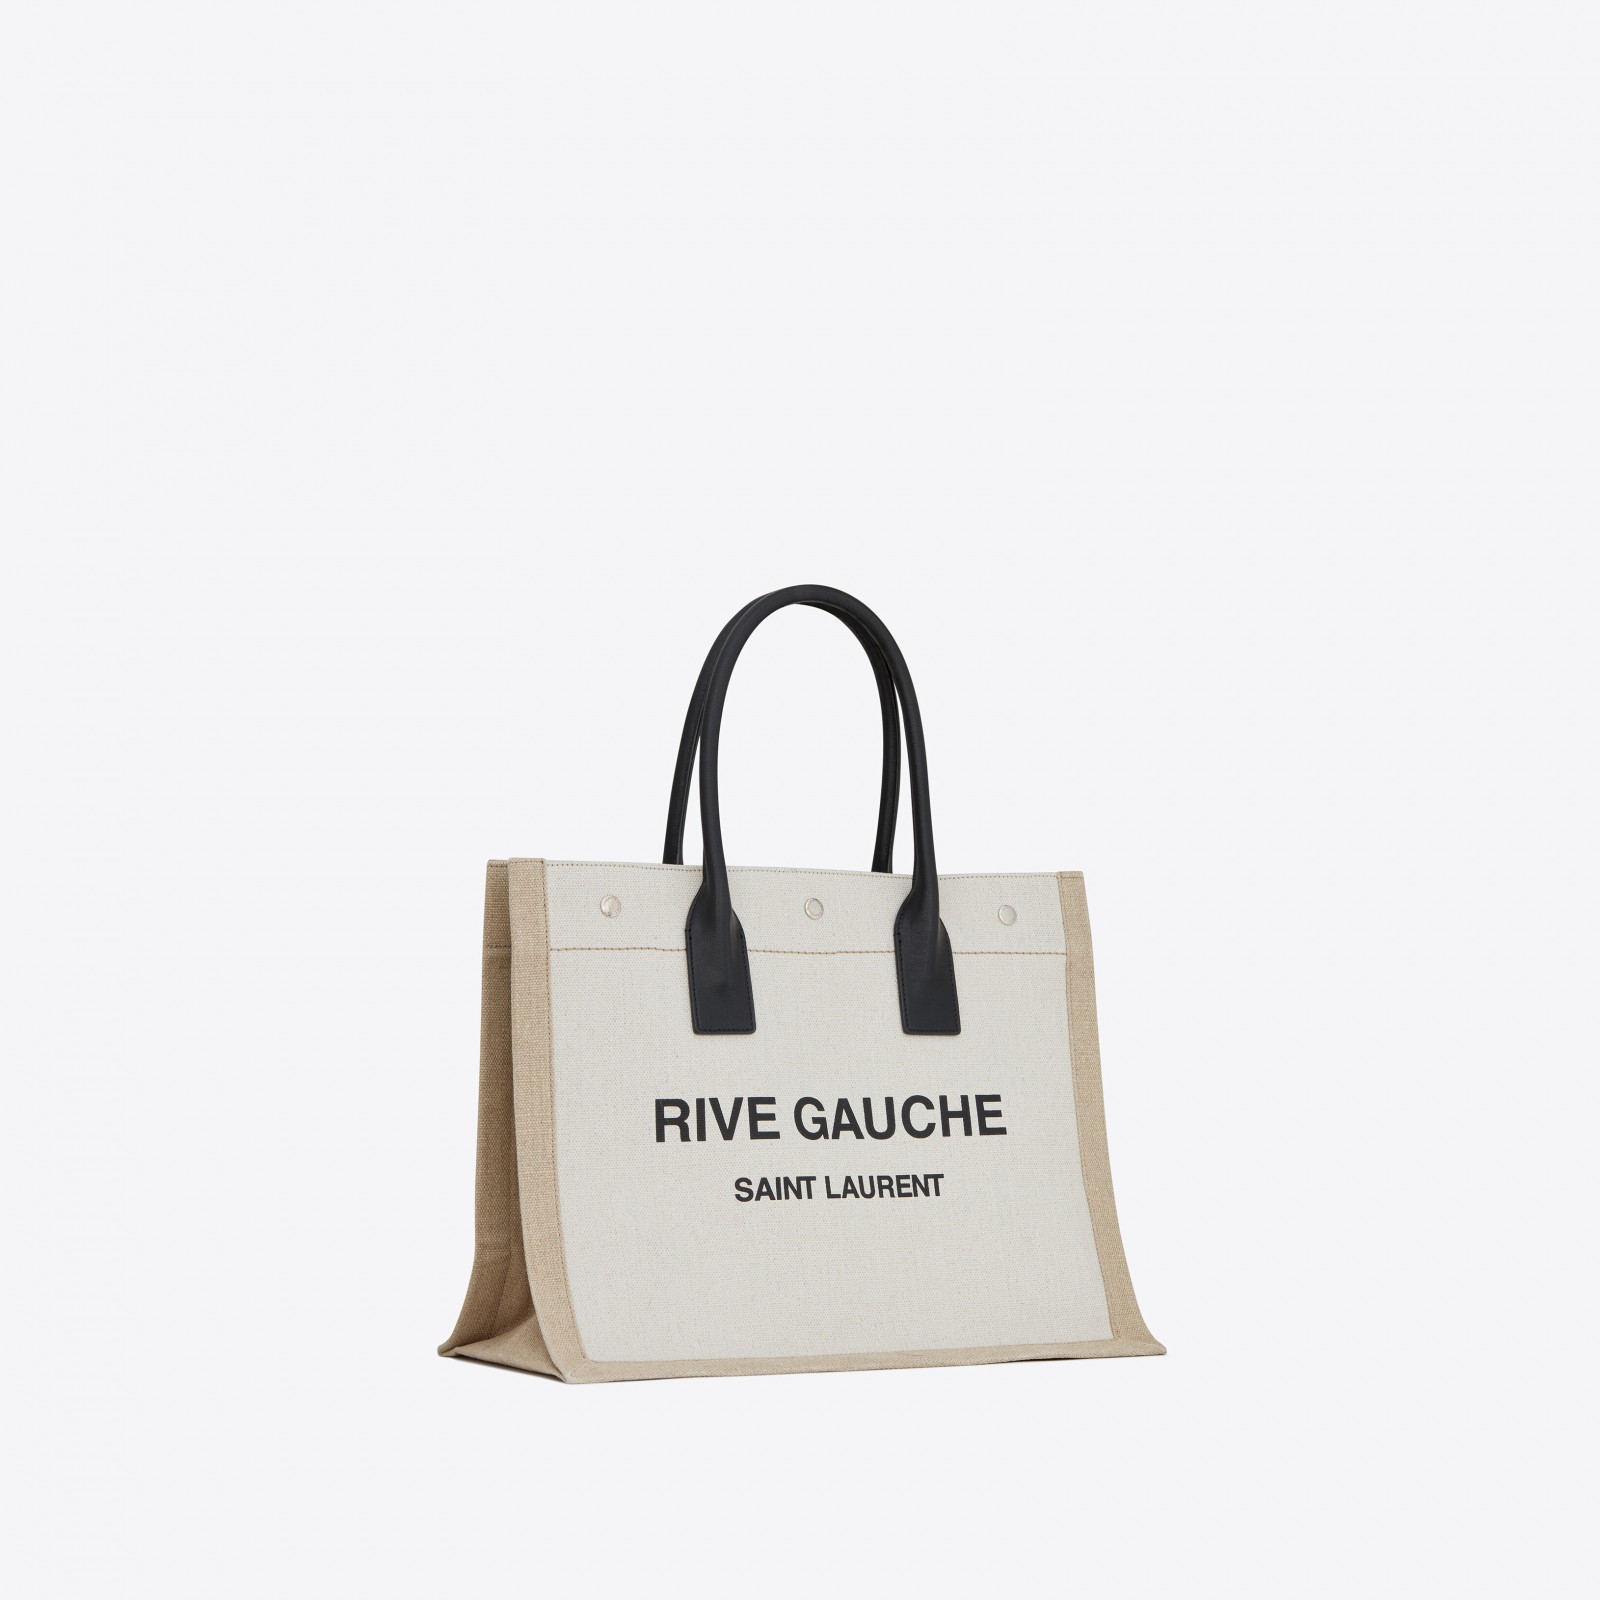 RIVE GAUCHE SMALL TOTE BAG